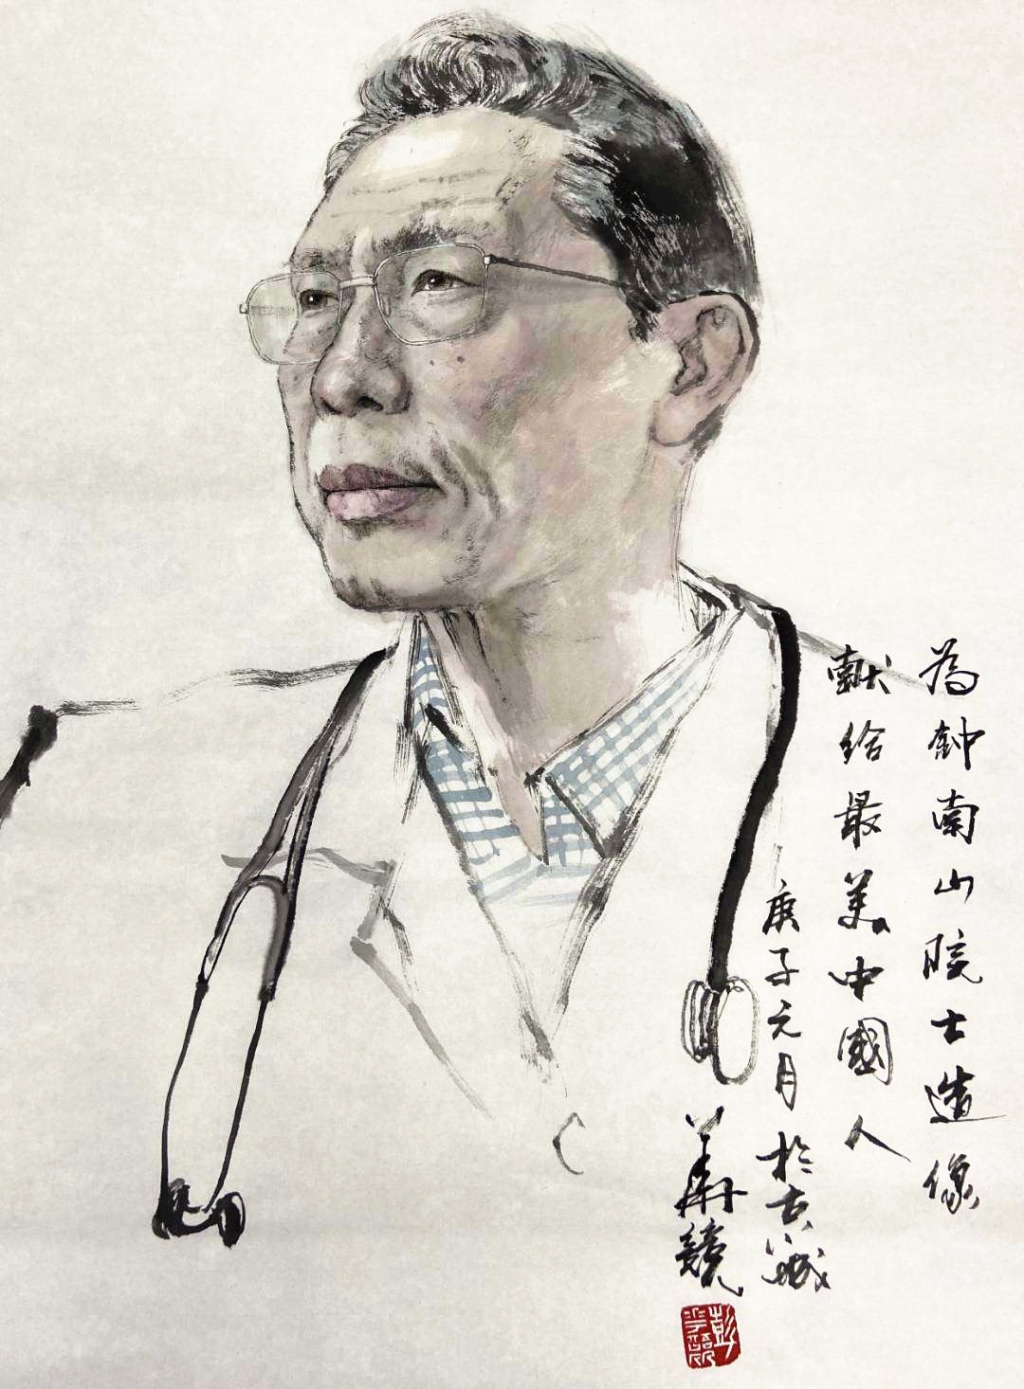 中国美协分党组倡议:用画笔讴歌疫情防控一线的最美中国人